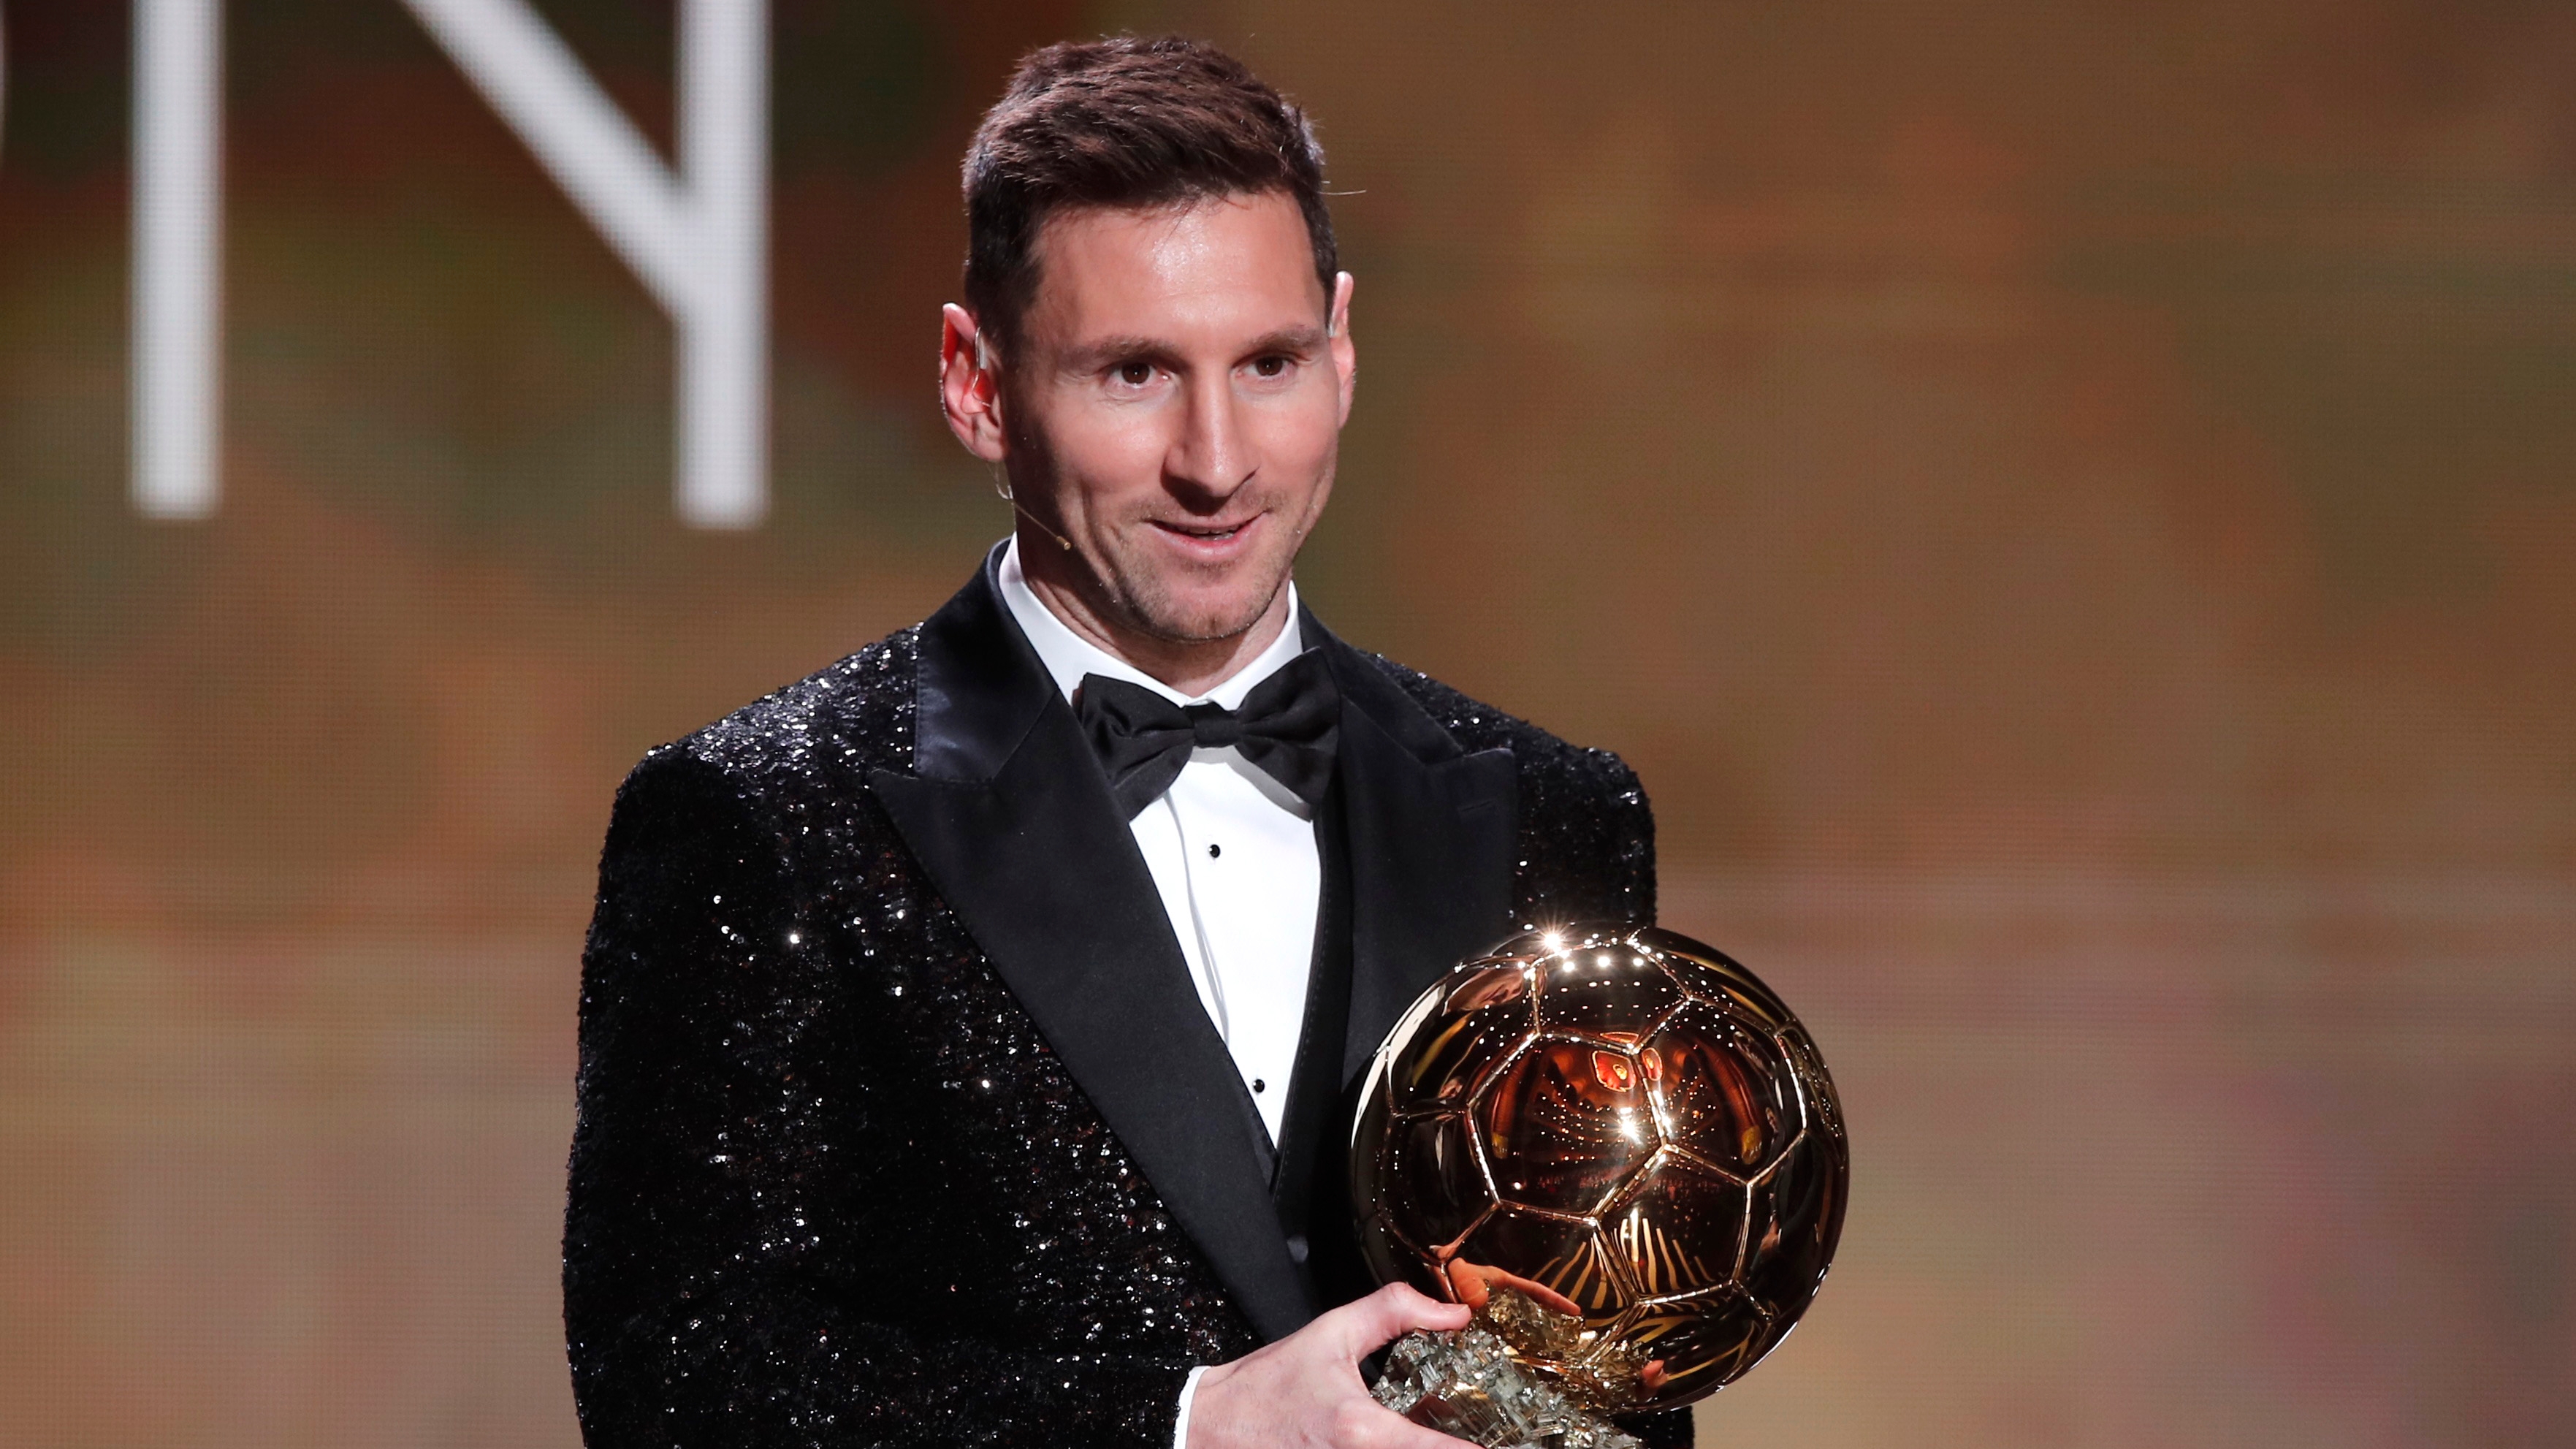 Rusia Vuelo Biblia Los detalles del extravagante traje de Messi en la gala del Balón de Oro  2021 en composé con sus tres hijos - Infobae